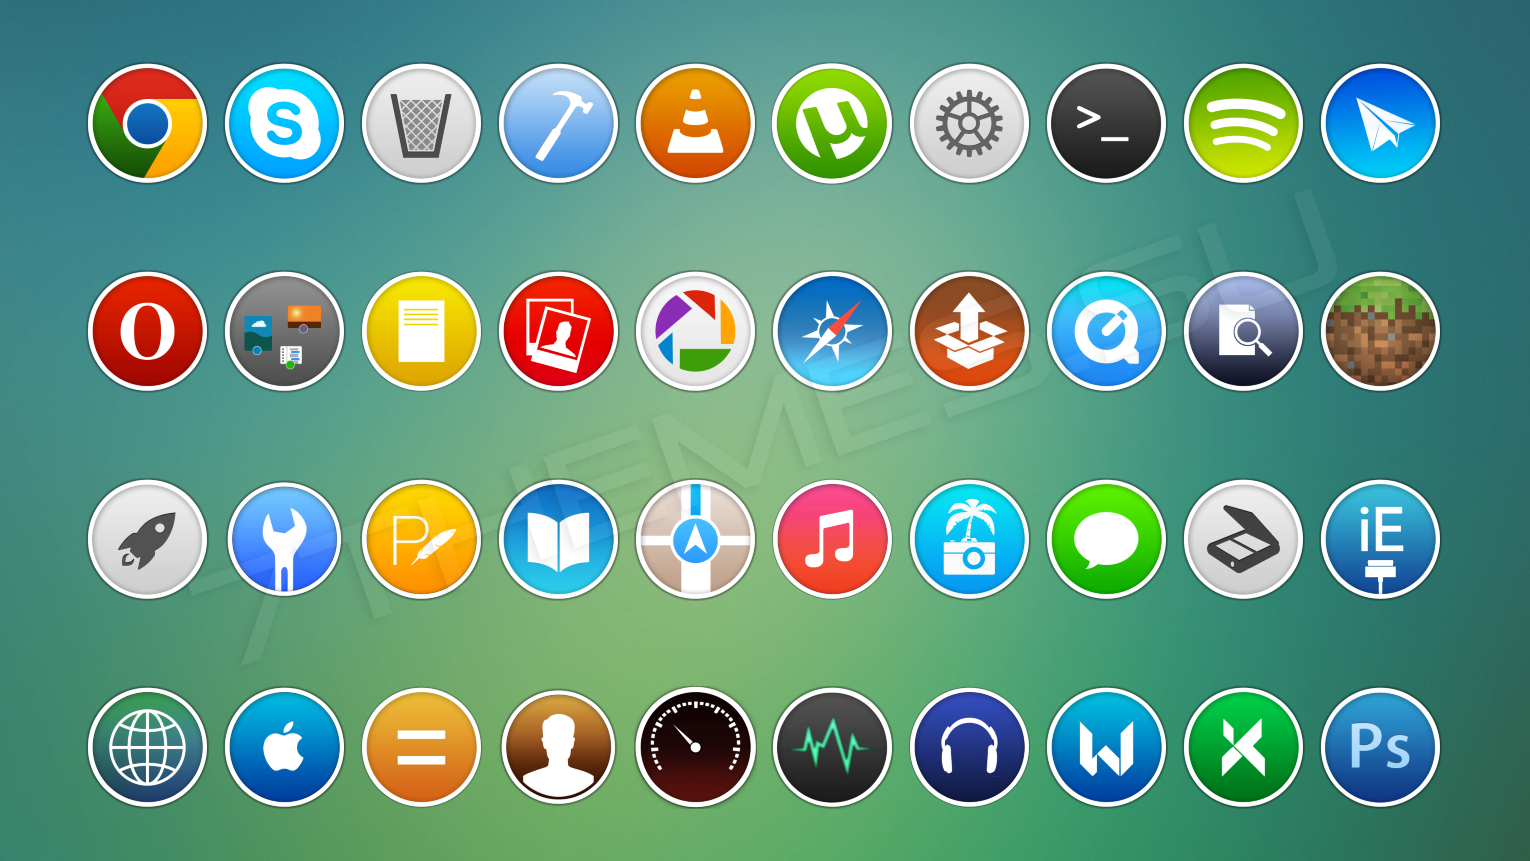 Round icons. Иконки для приложений. Красивые иконки для приложений. Значки приложений в одном стиле. Необычные иконки для приложений.